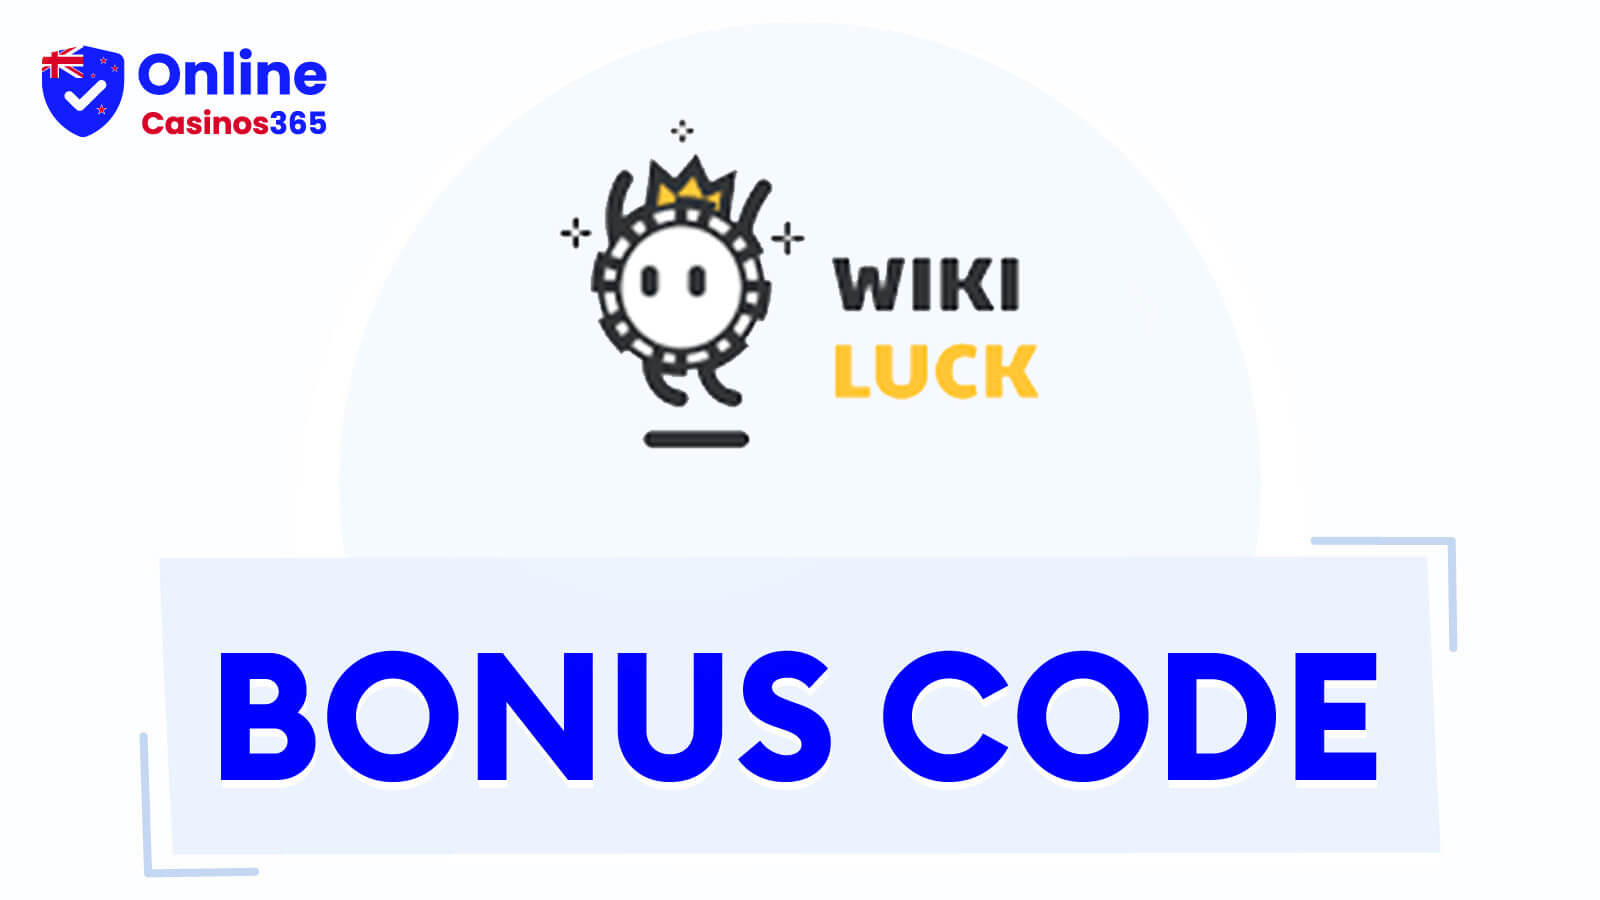 WikiLuck Casino Bonuses